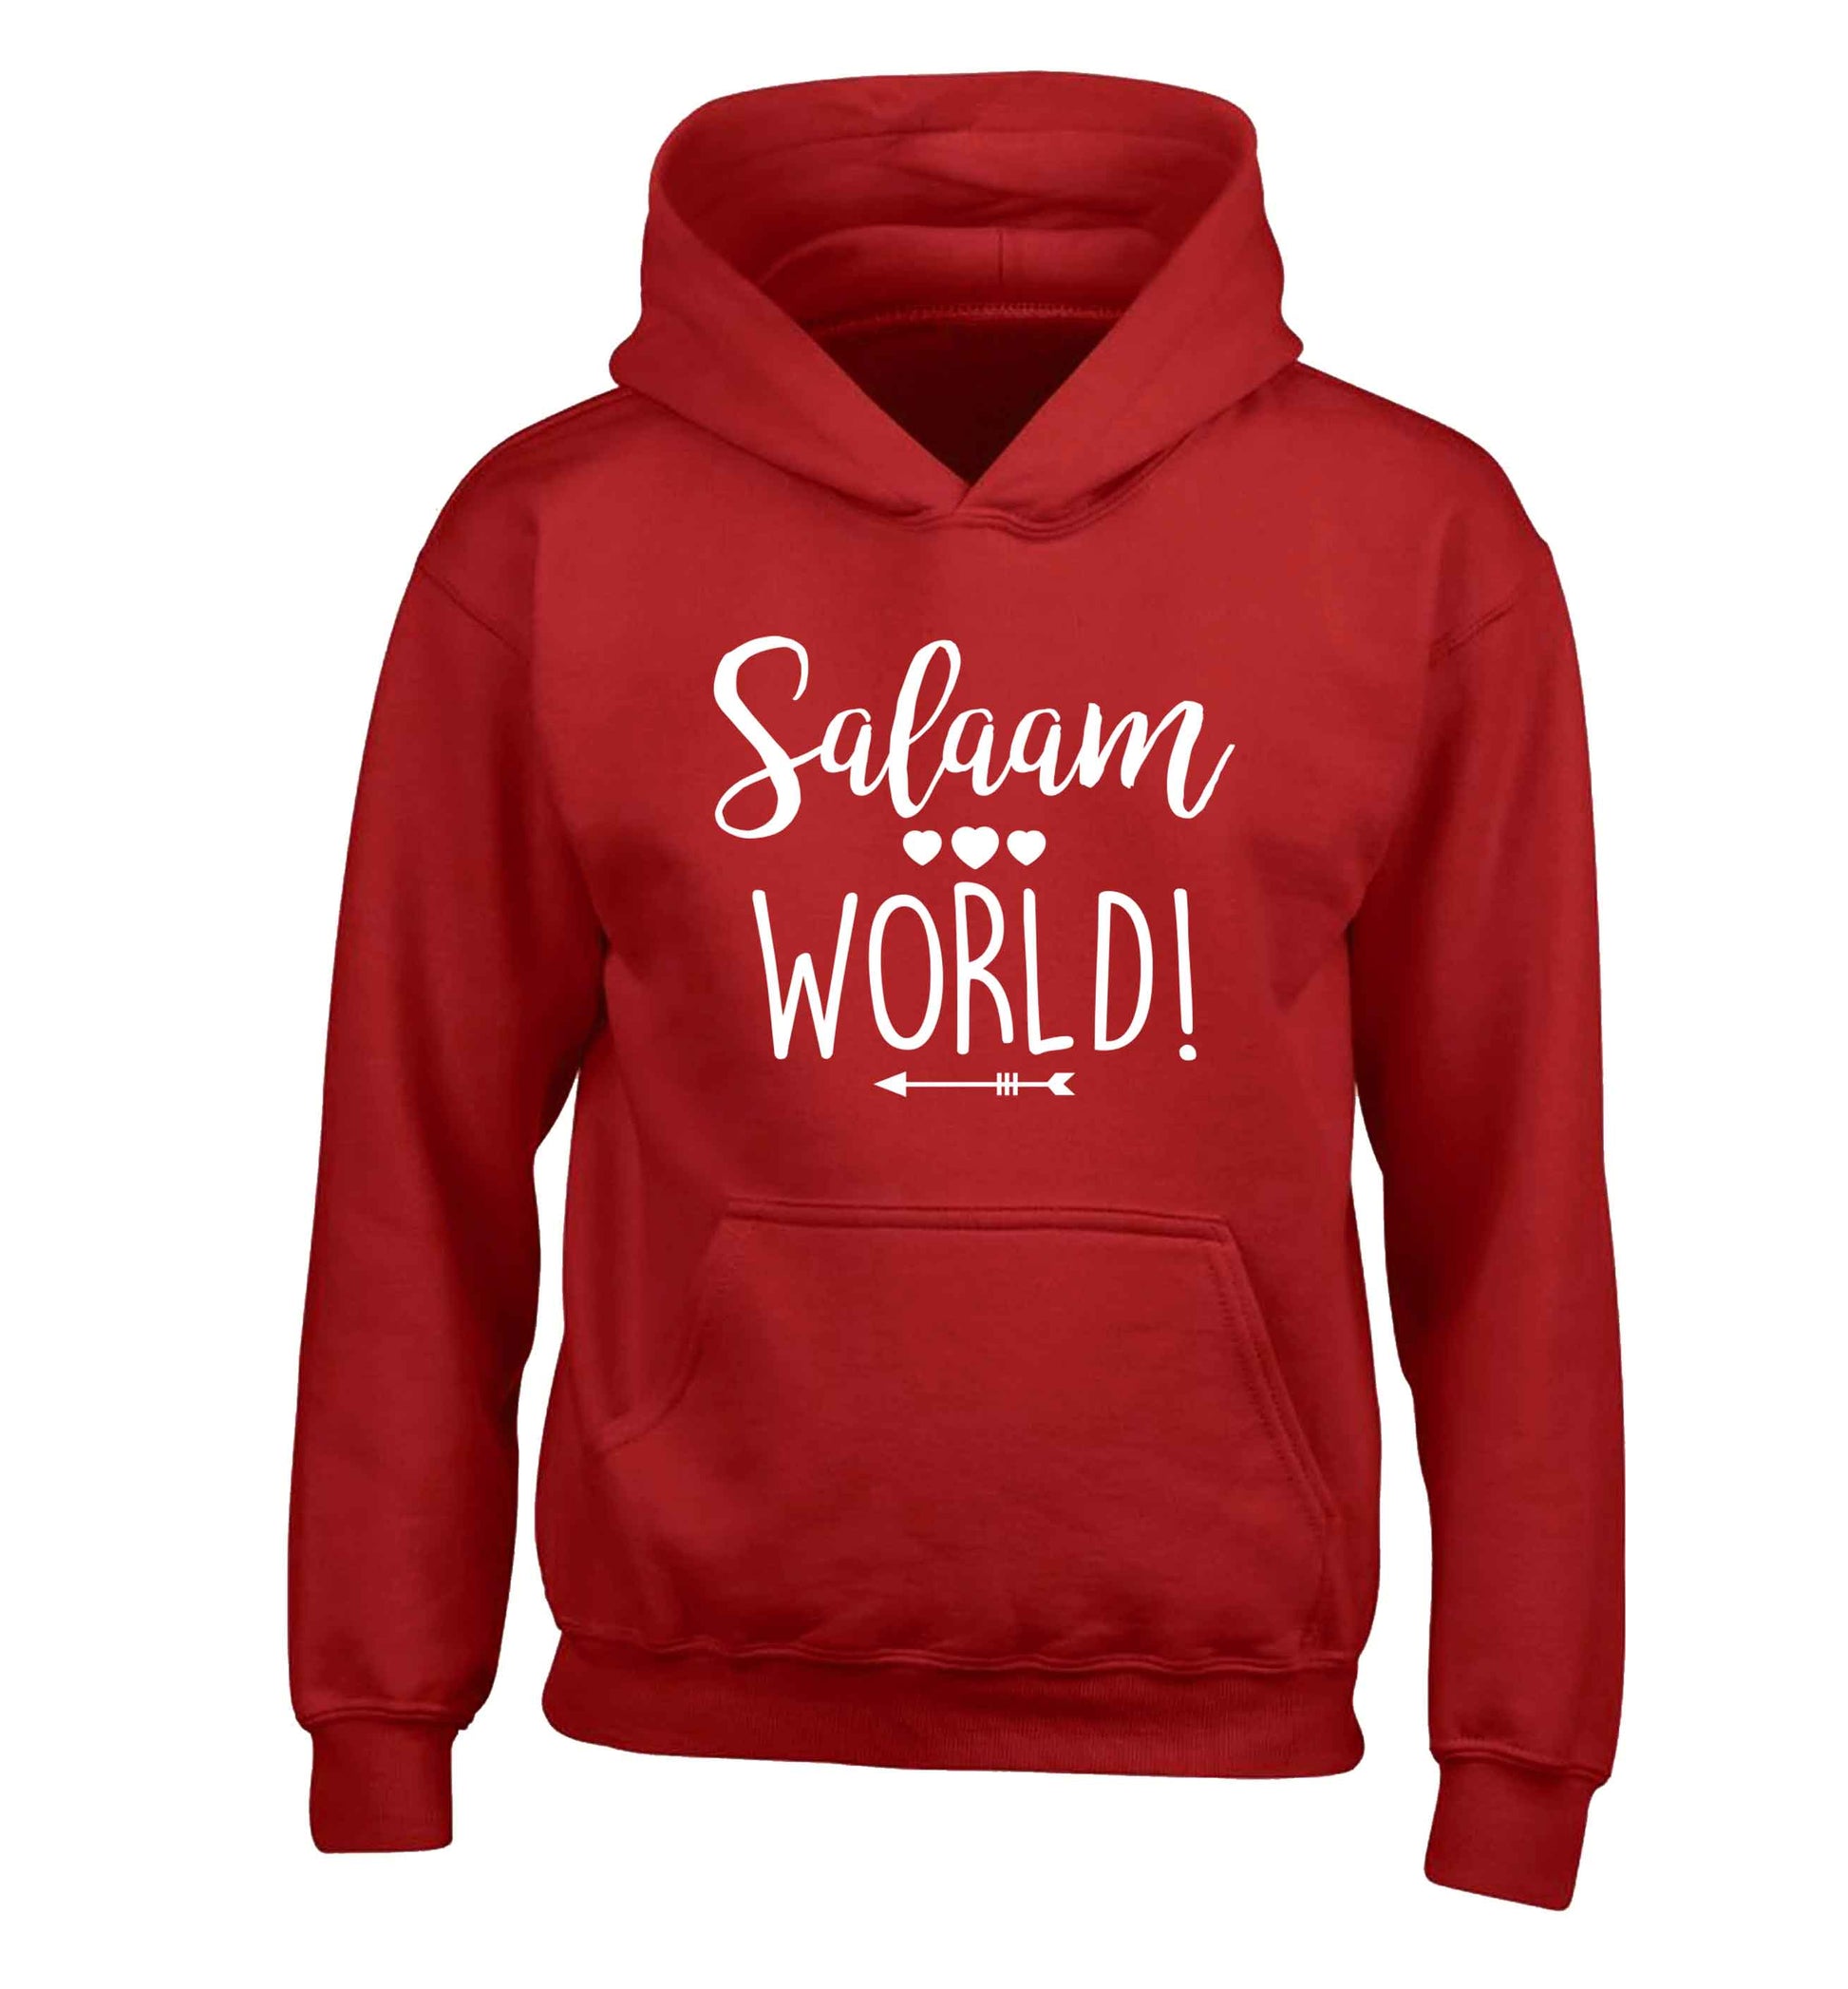 Salaam world children's red hoodie 12-13 Years